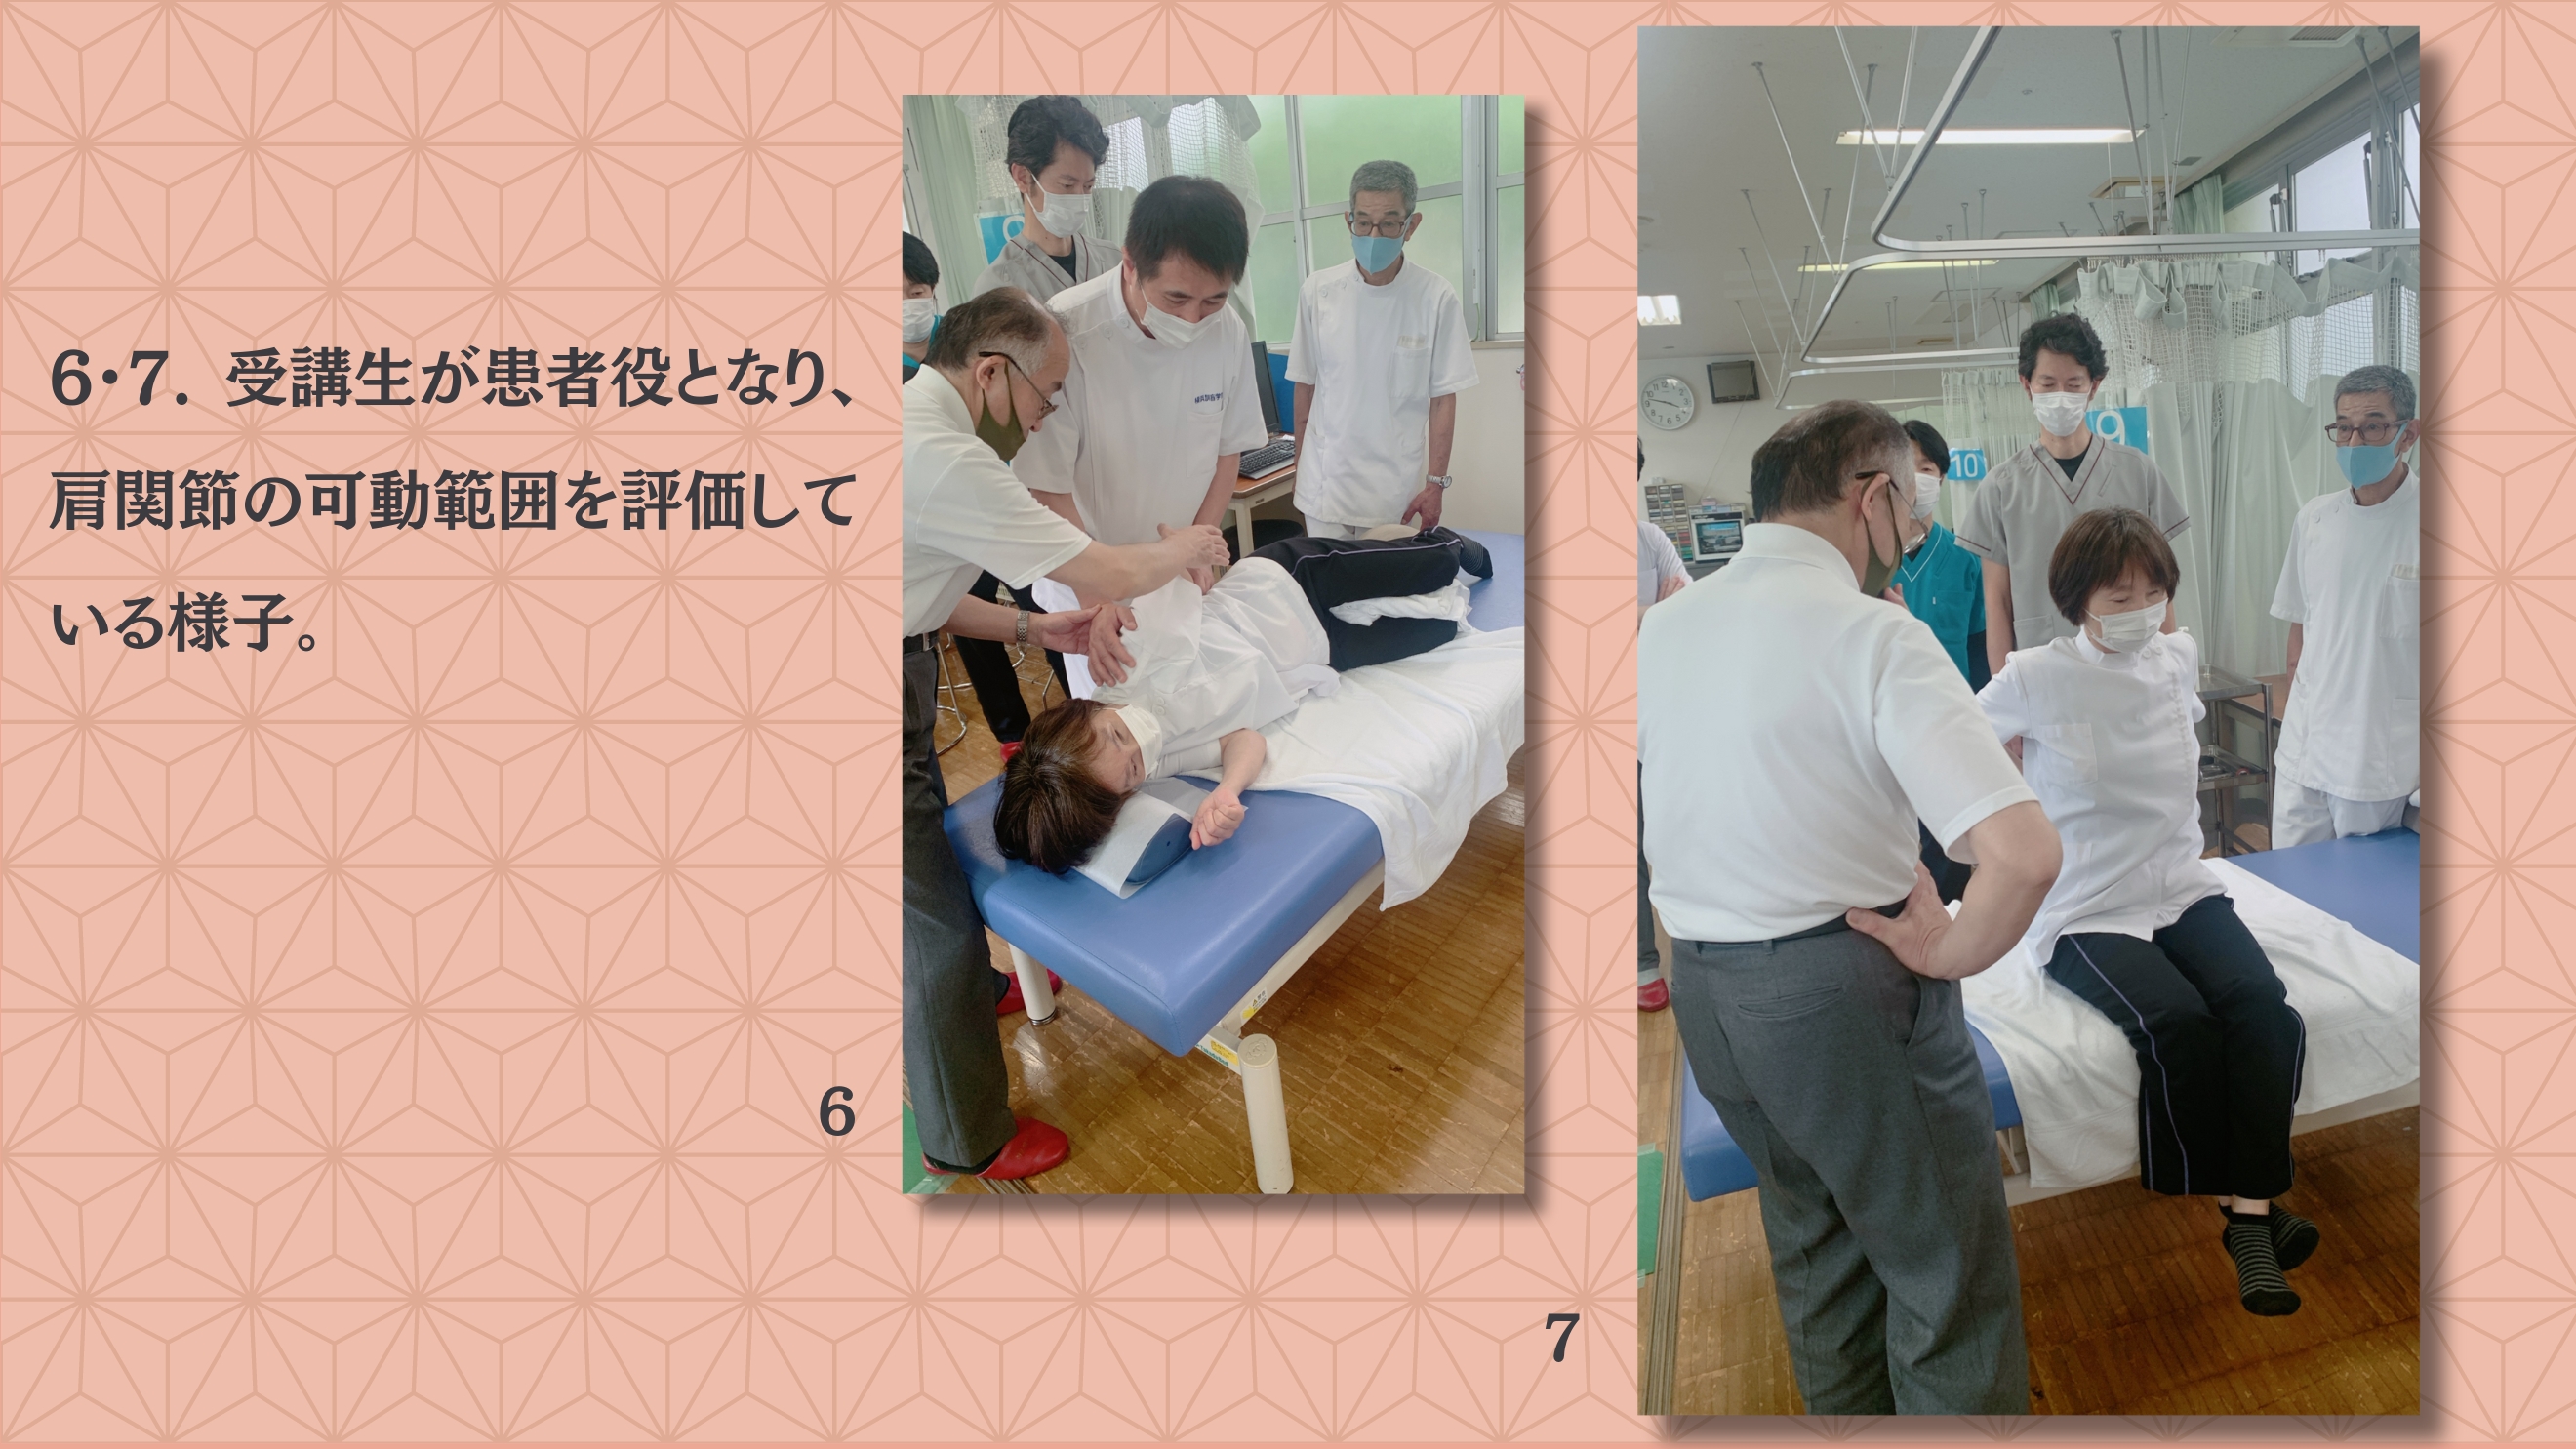 6・7. 受講生が患者役となり、肩関節の可動範囲を評価している様子